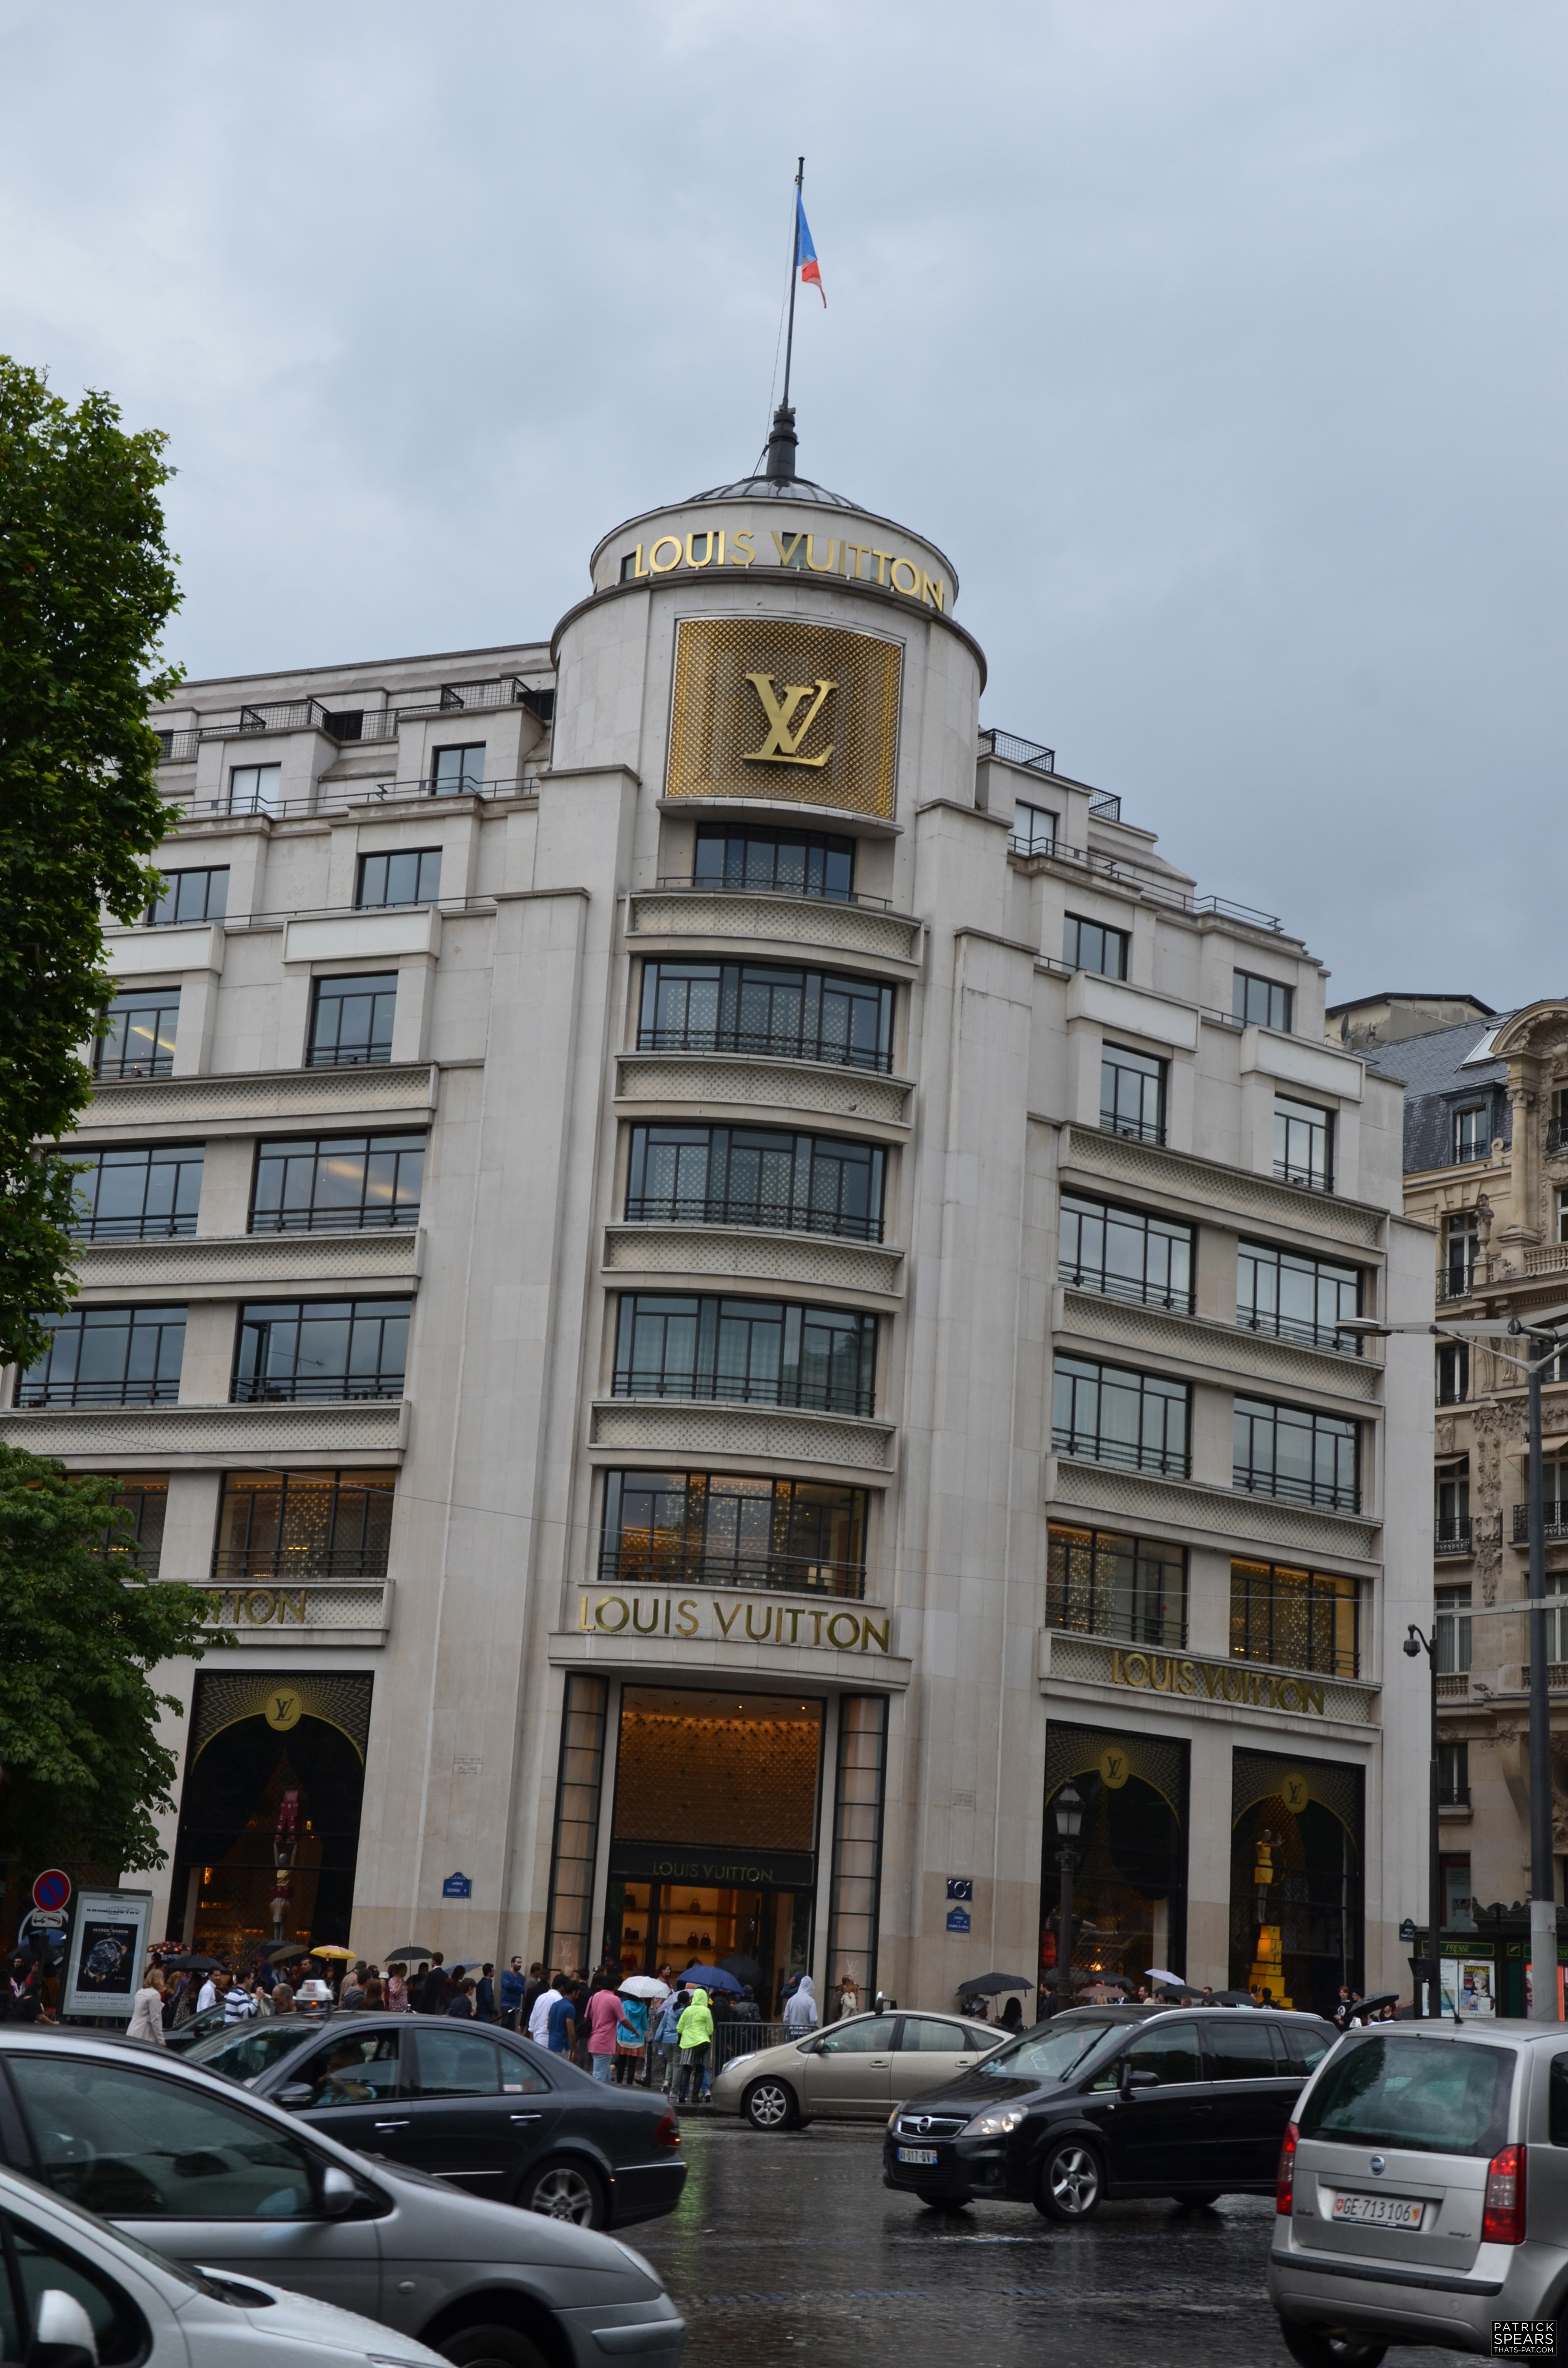 Louis Vuitton flagship store in Paris